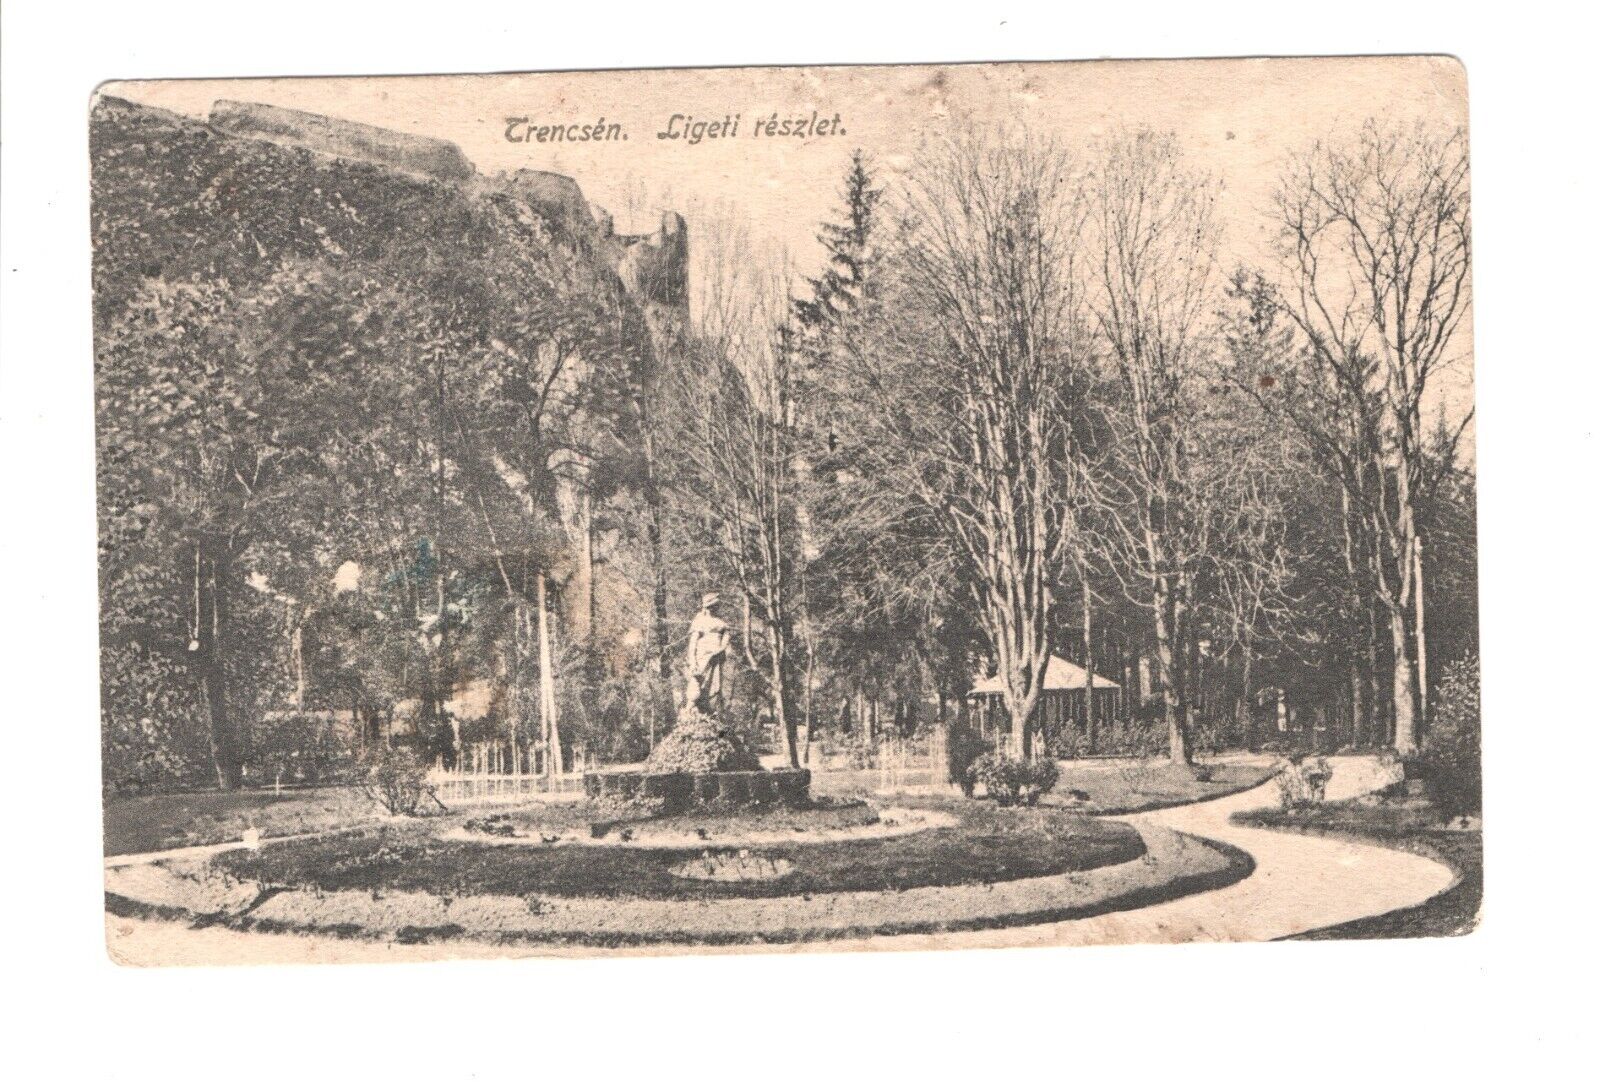 Slovakia Trenčín Ligeti reszlet monument postcard 1915